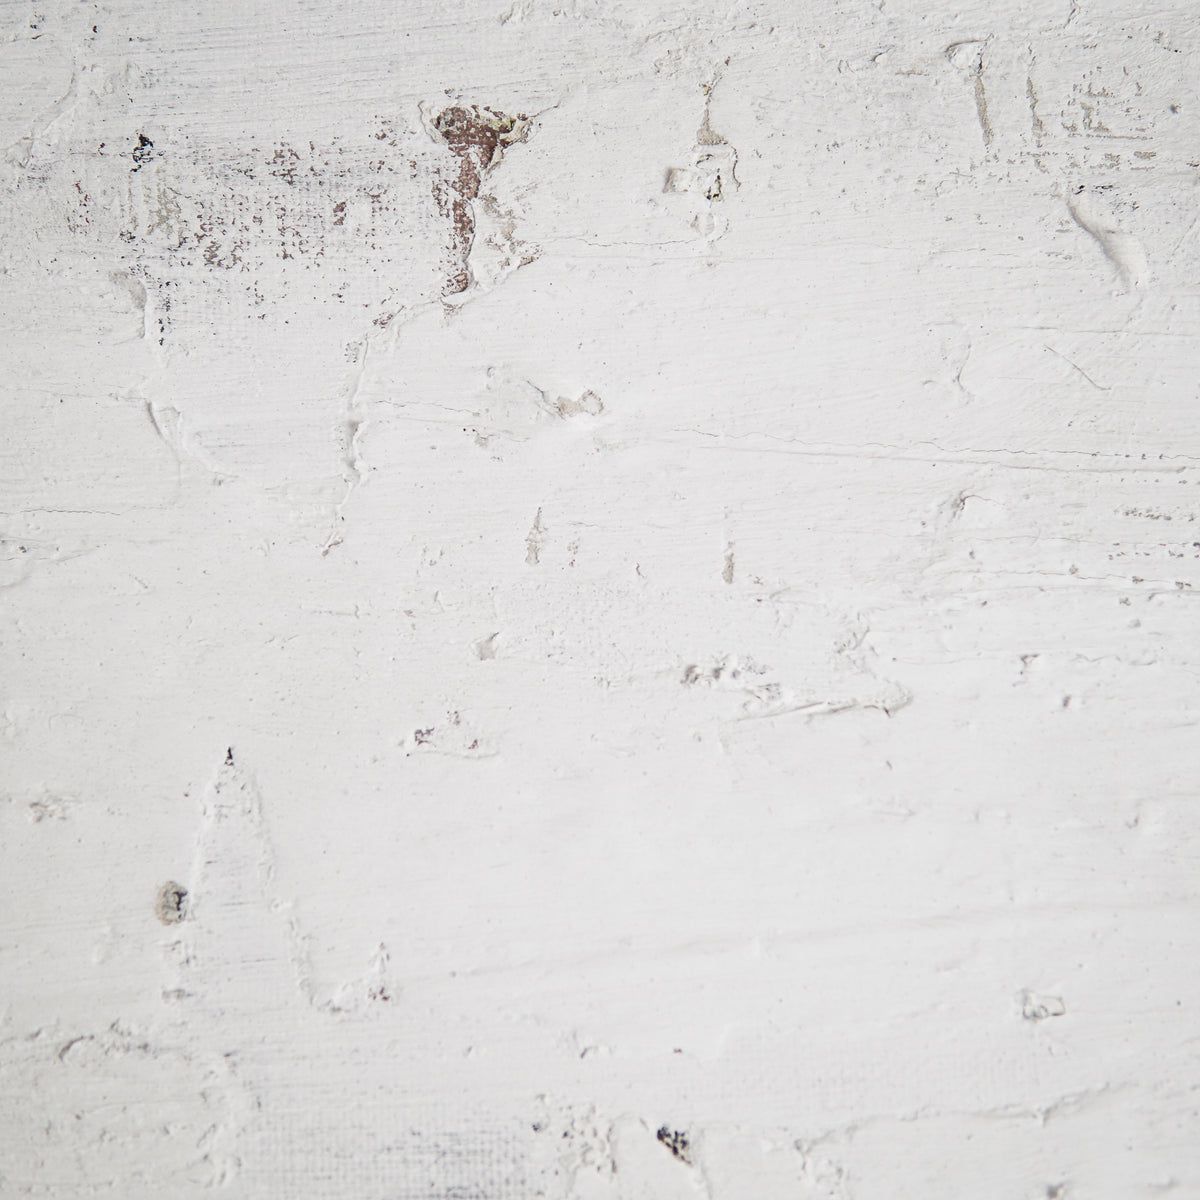 Ana Moraes | sem título II, 202 | 140 x 30 cm | pastel de óleo, cimento, silicone, acrílico e spray sobre tela